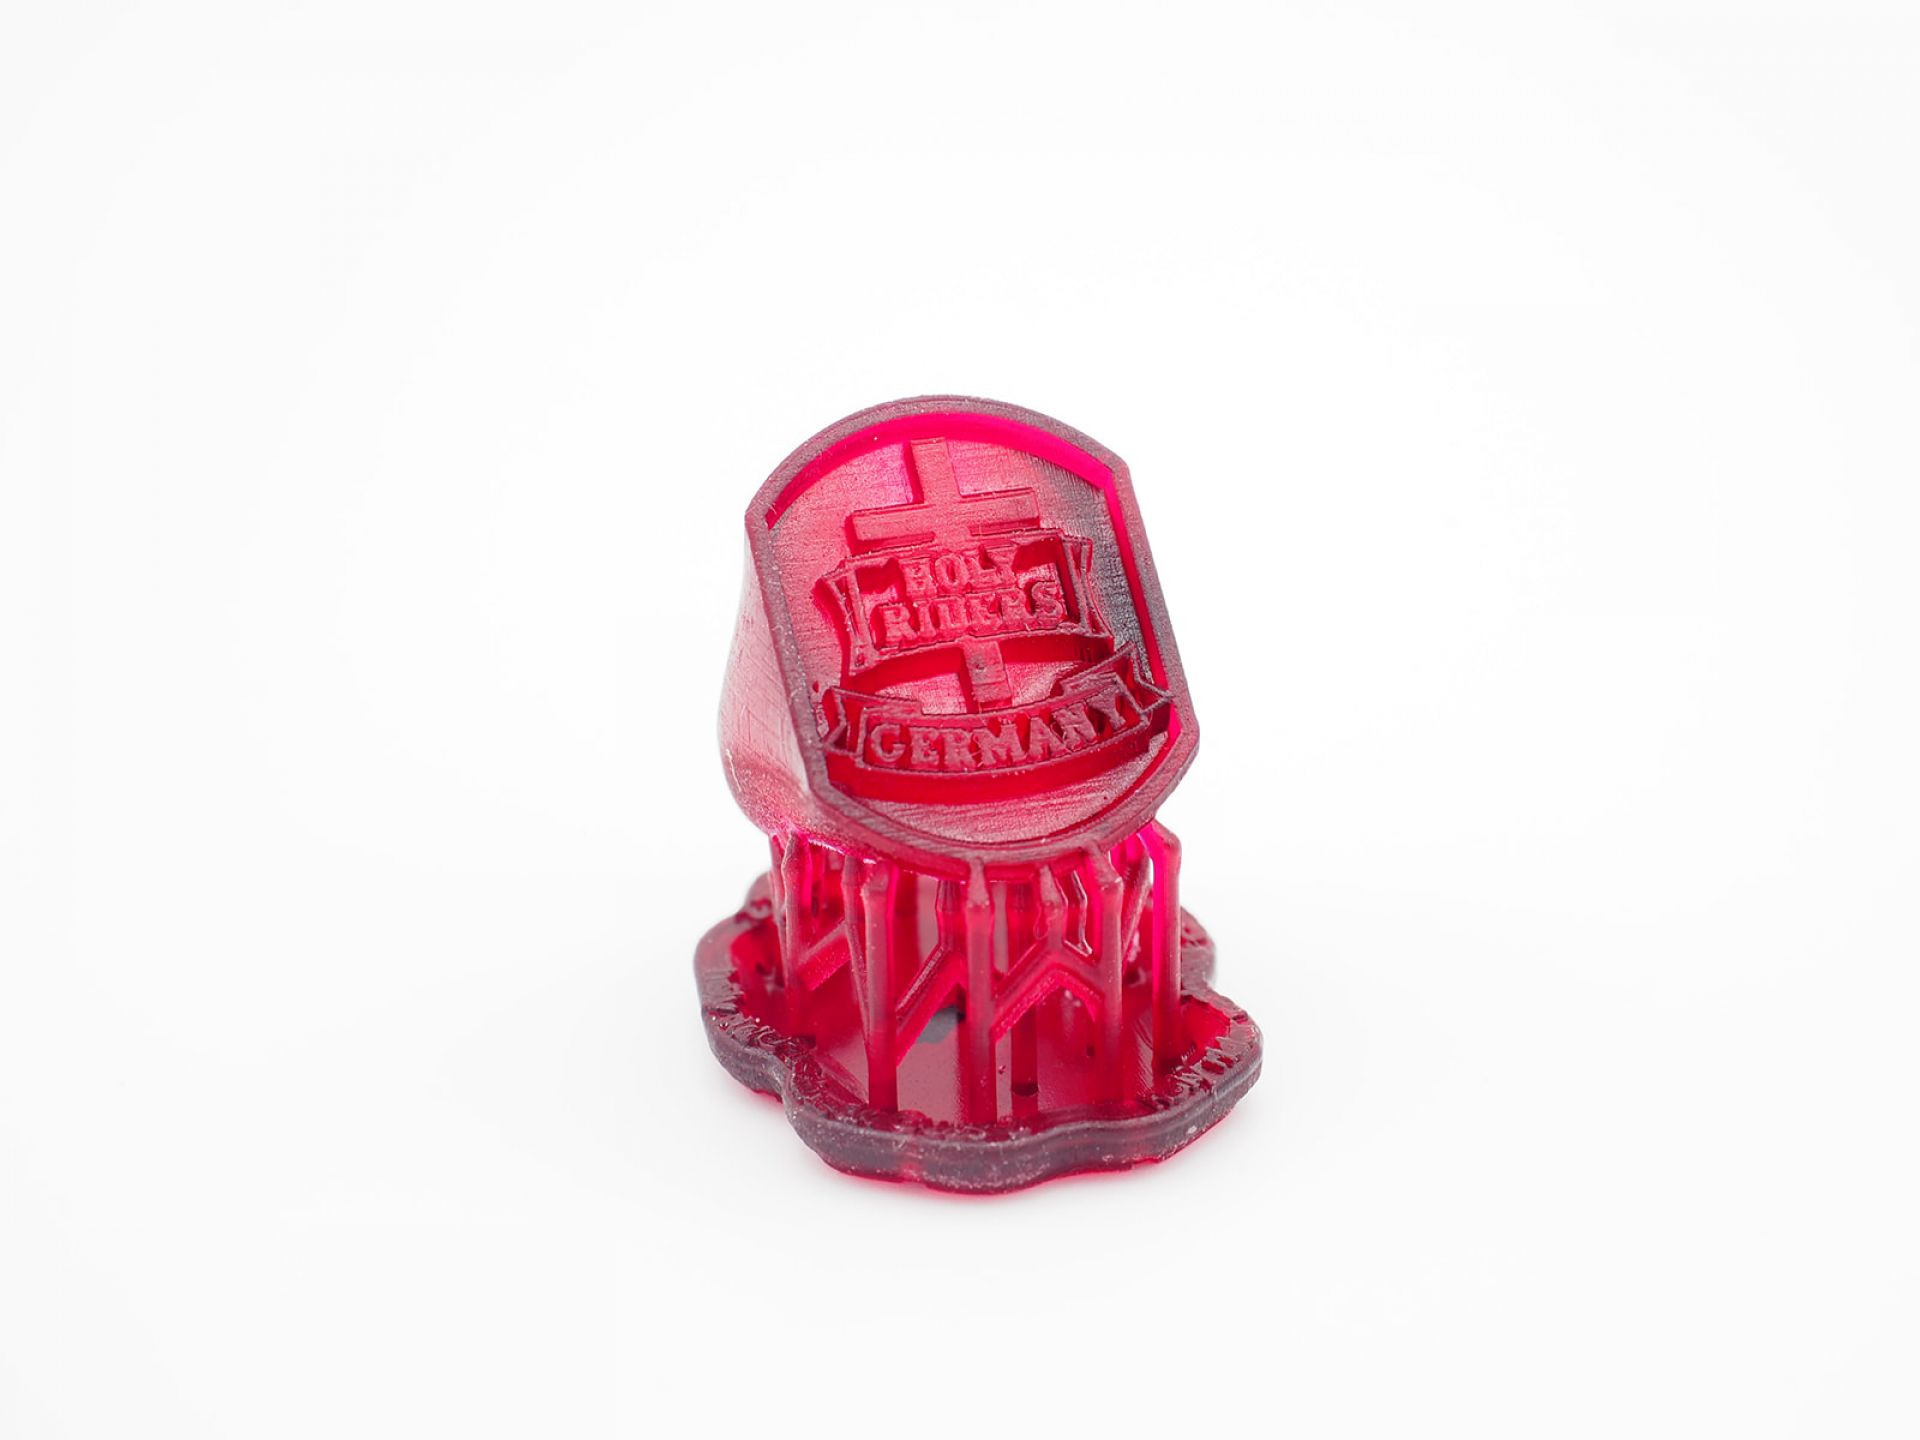 Gießbares Kunstharzmaterial für den 3D-Druck für Schmuck | TIKO-G Pro